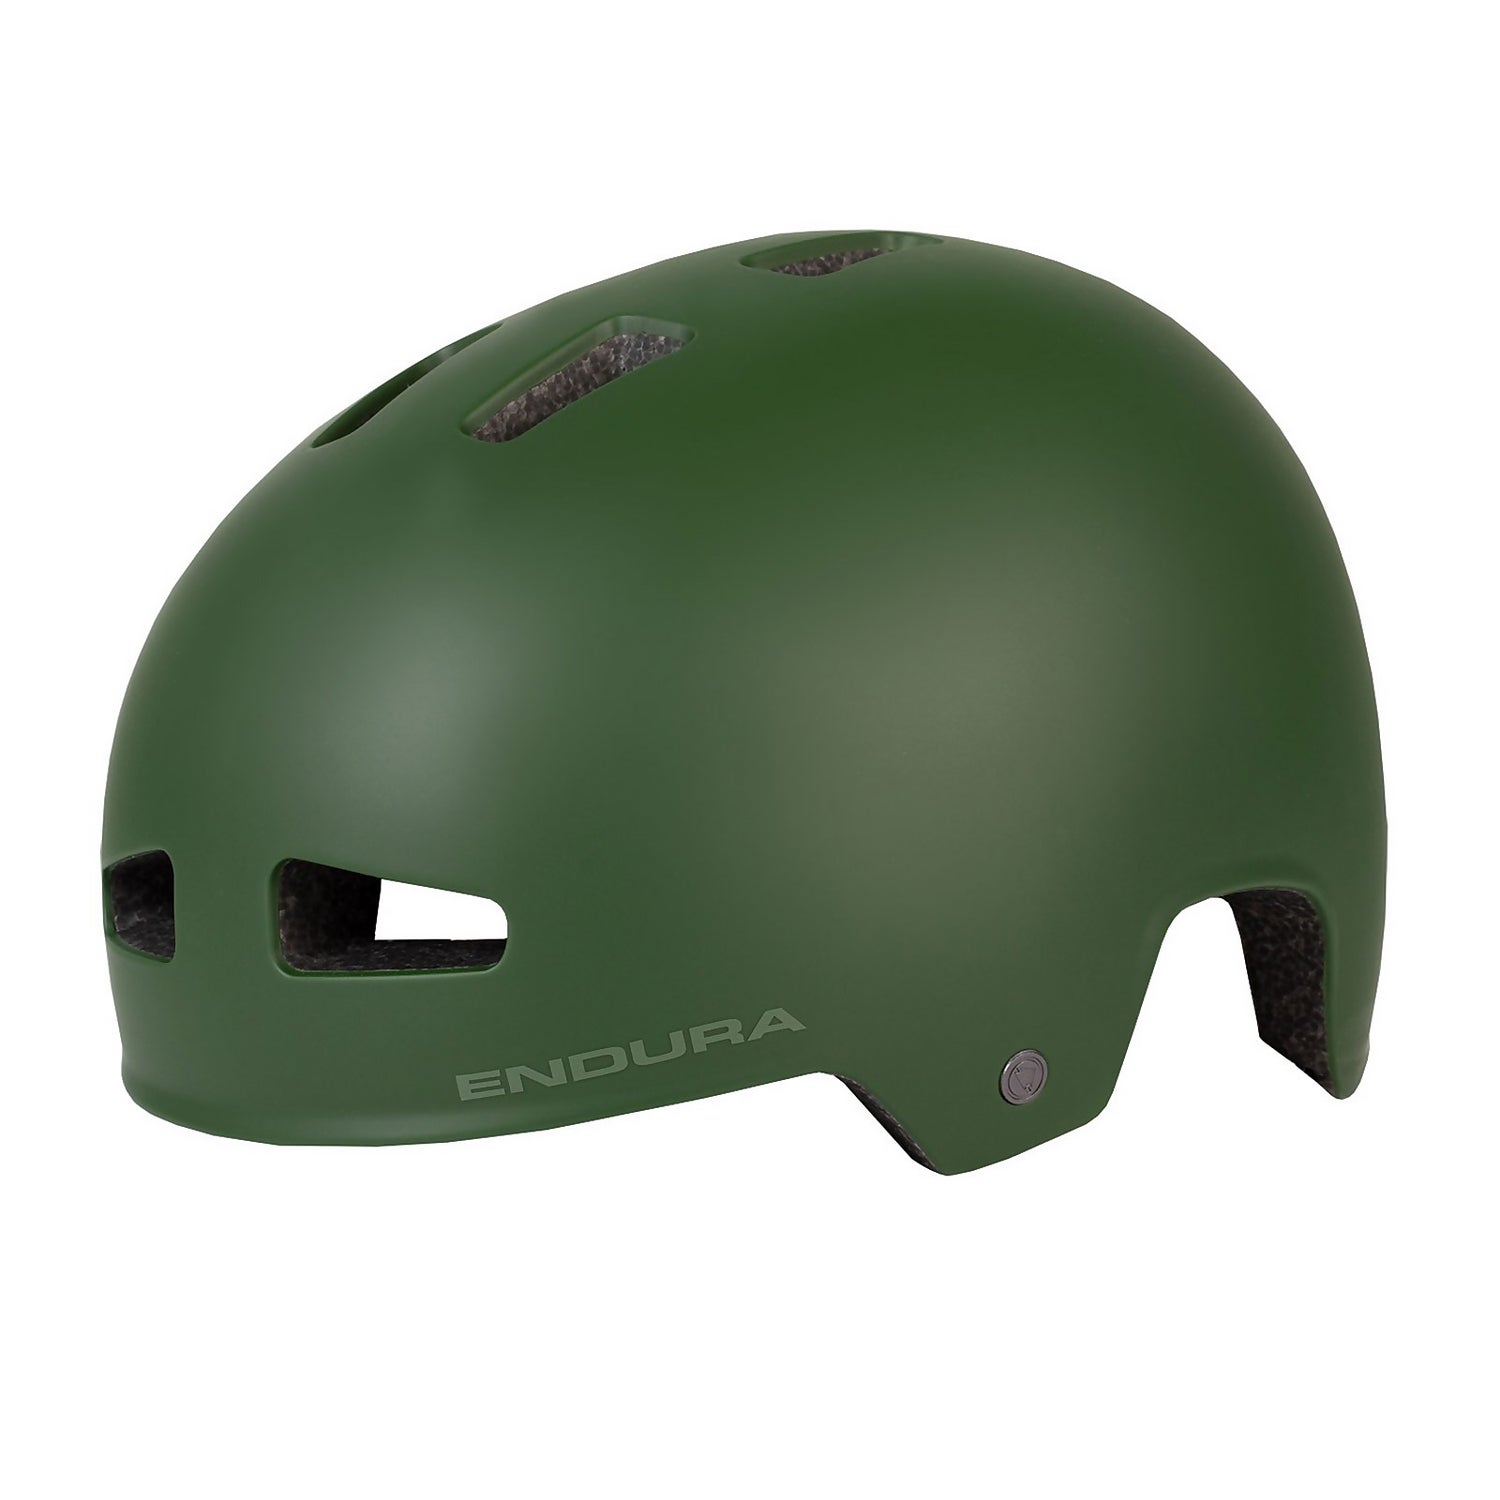 PissPot Helmet - Forest Green - S-M